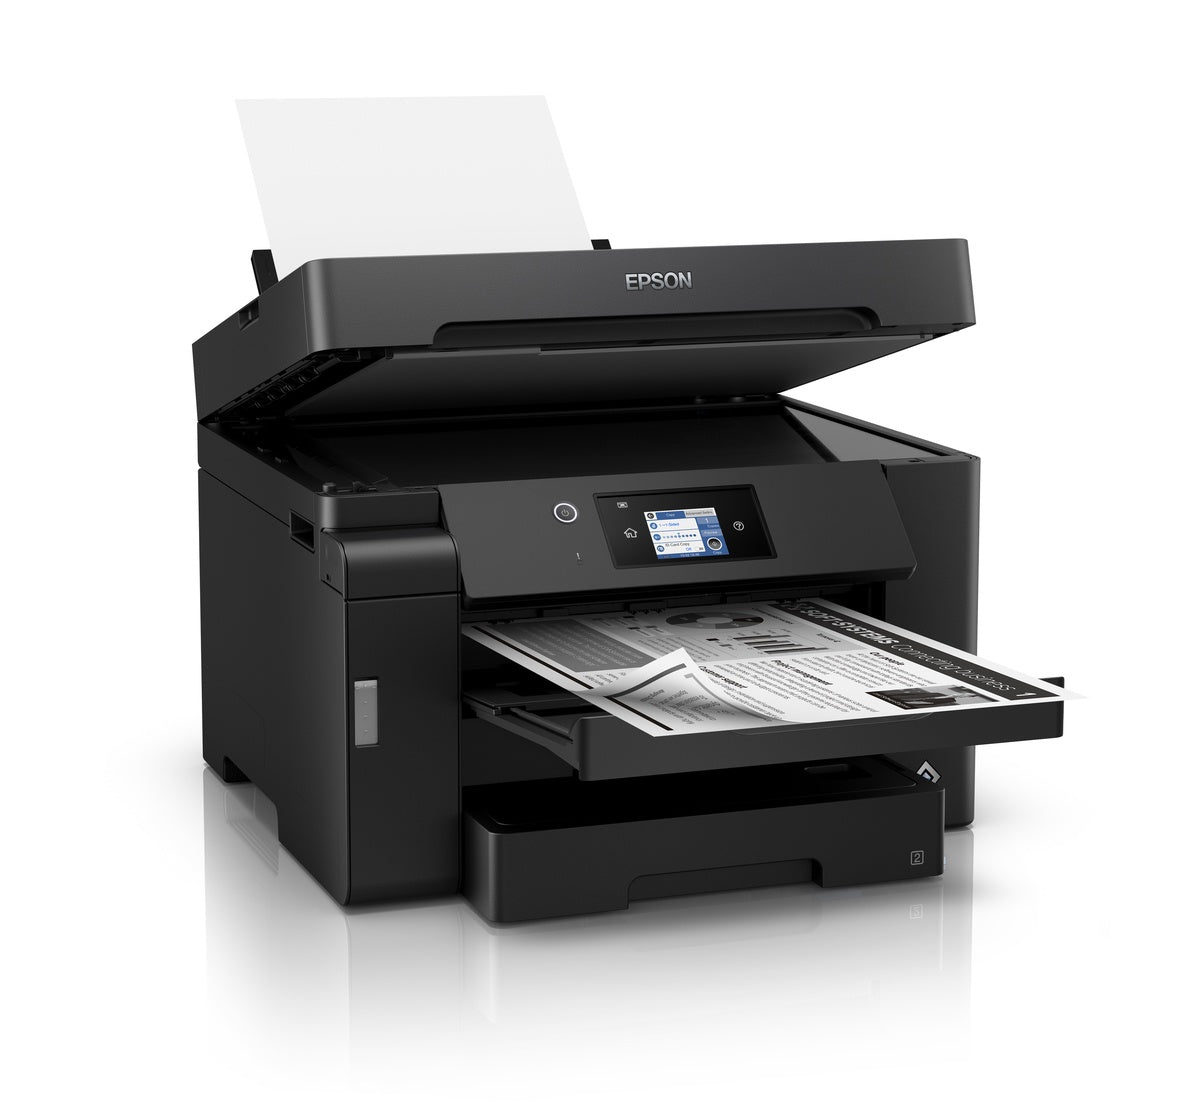 Epson M15140 5-in-1 w/ ADF Mono Printer